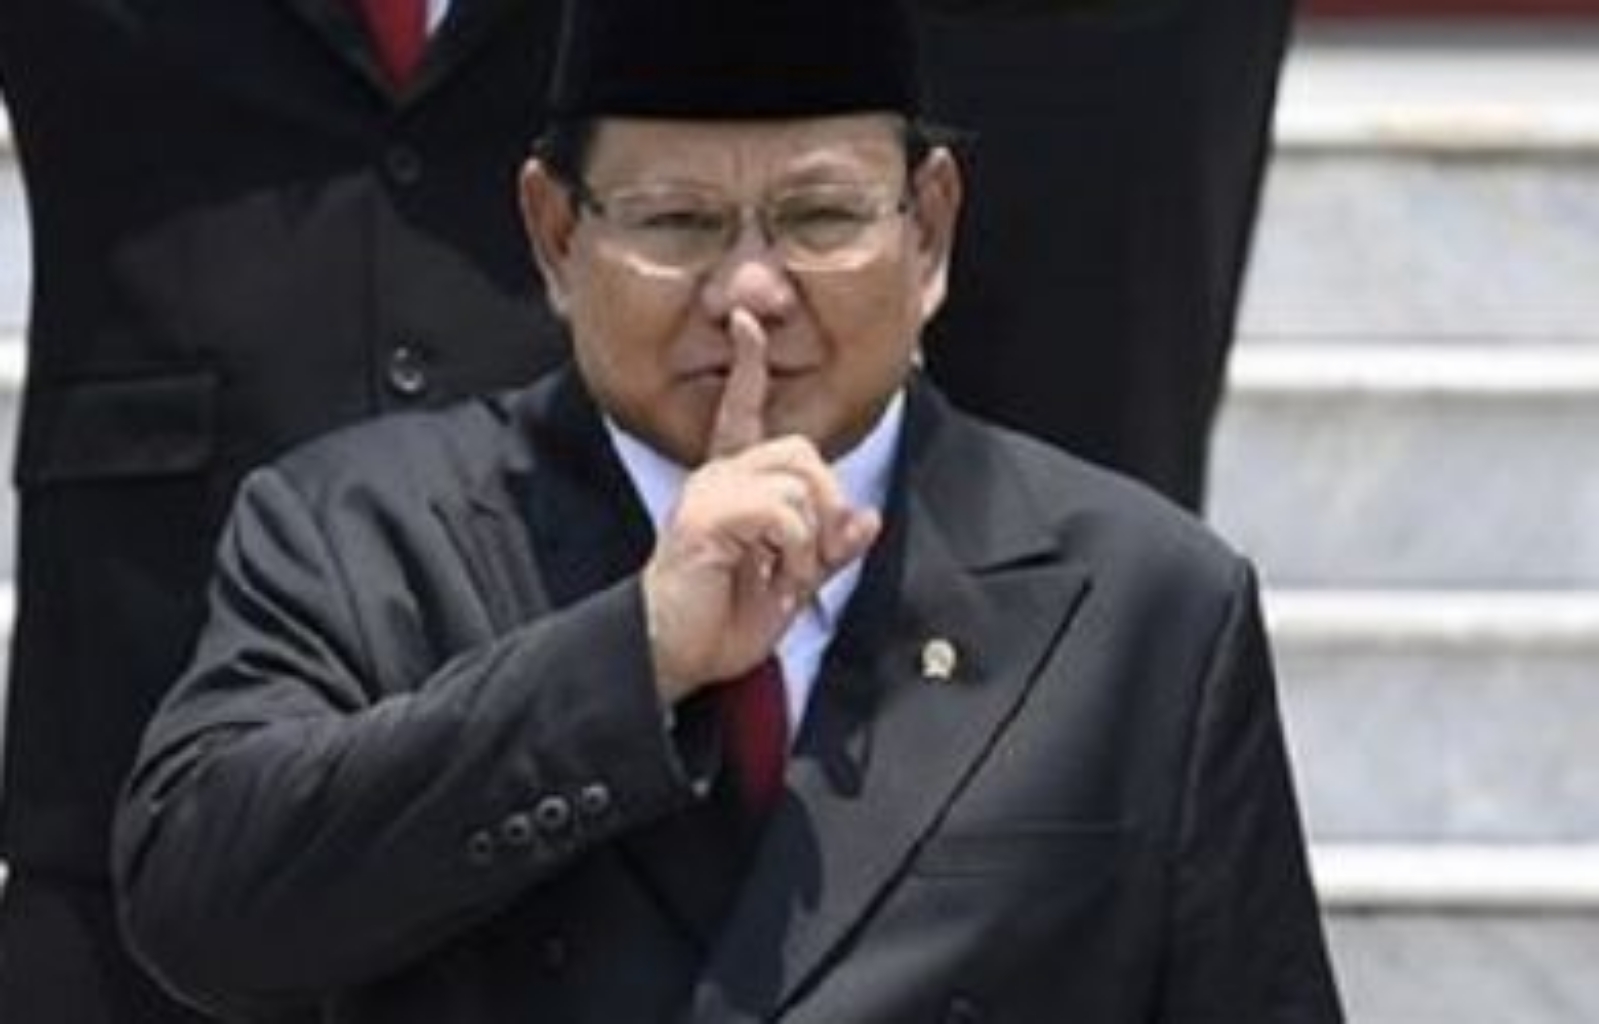 Negara Genting Corona, Andi Arief Serang Prabowo: Menhan Diam Seribu Bahasa, Ini Bukan Bercanda